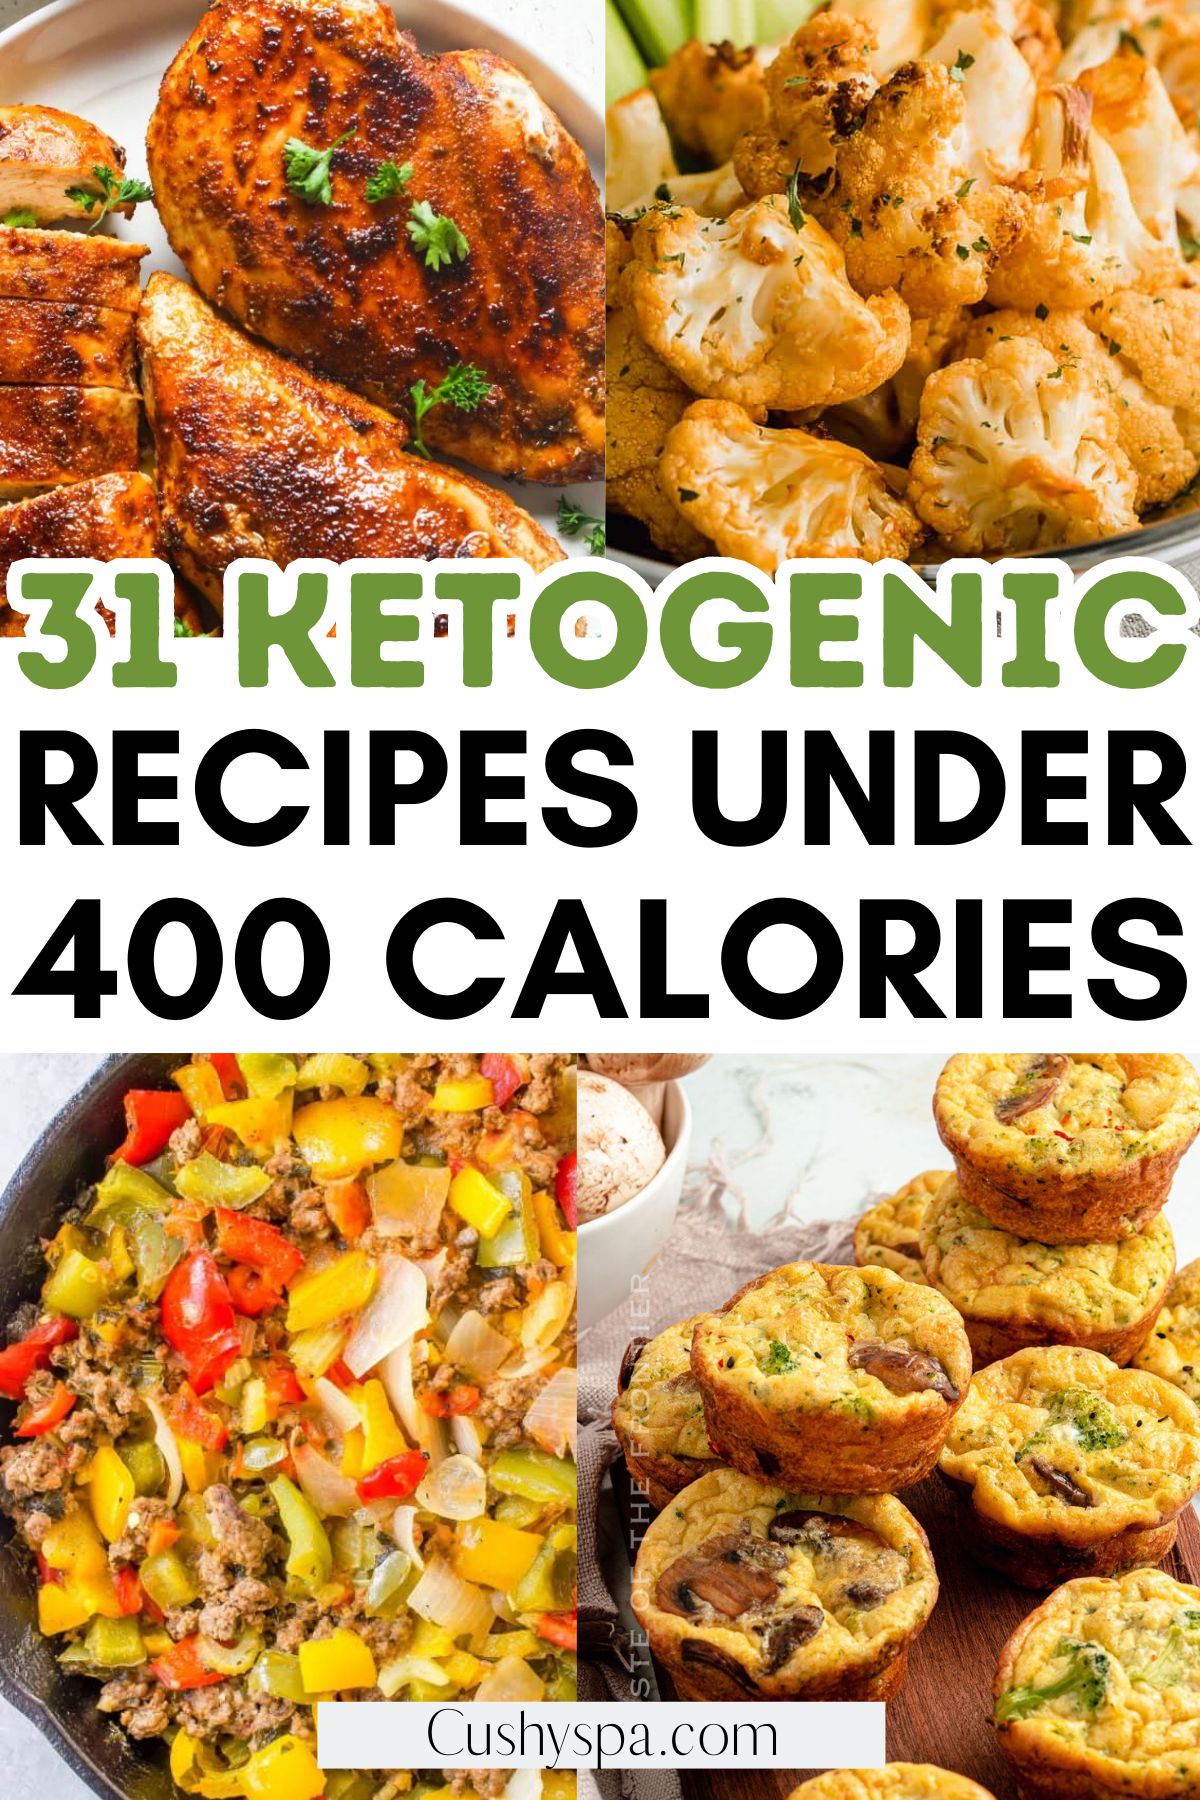 keto Recipes under 400 Calories